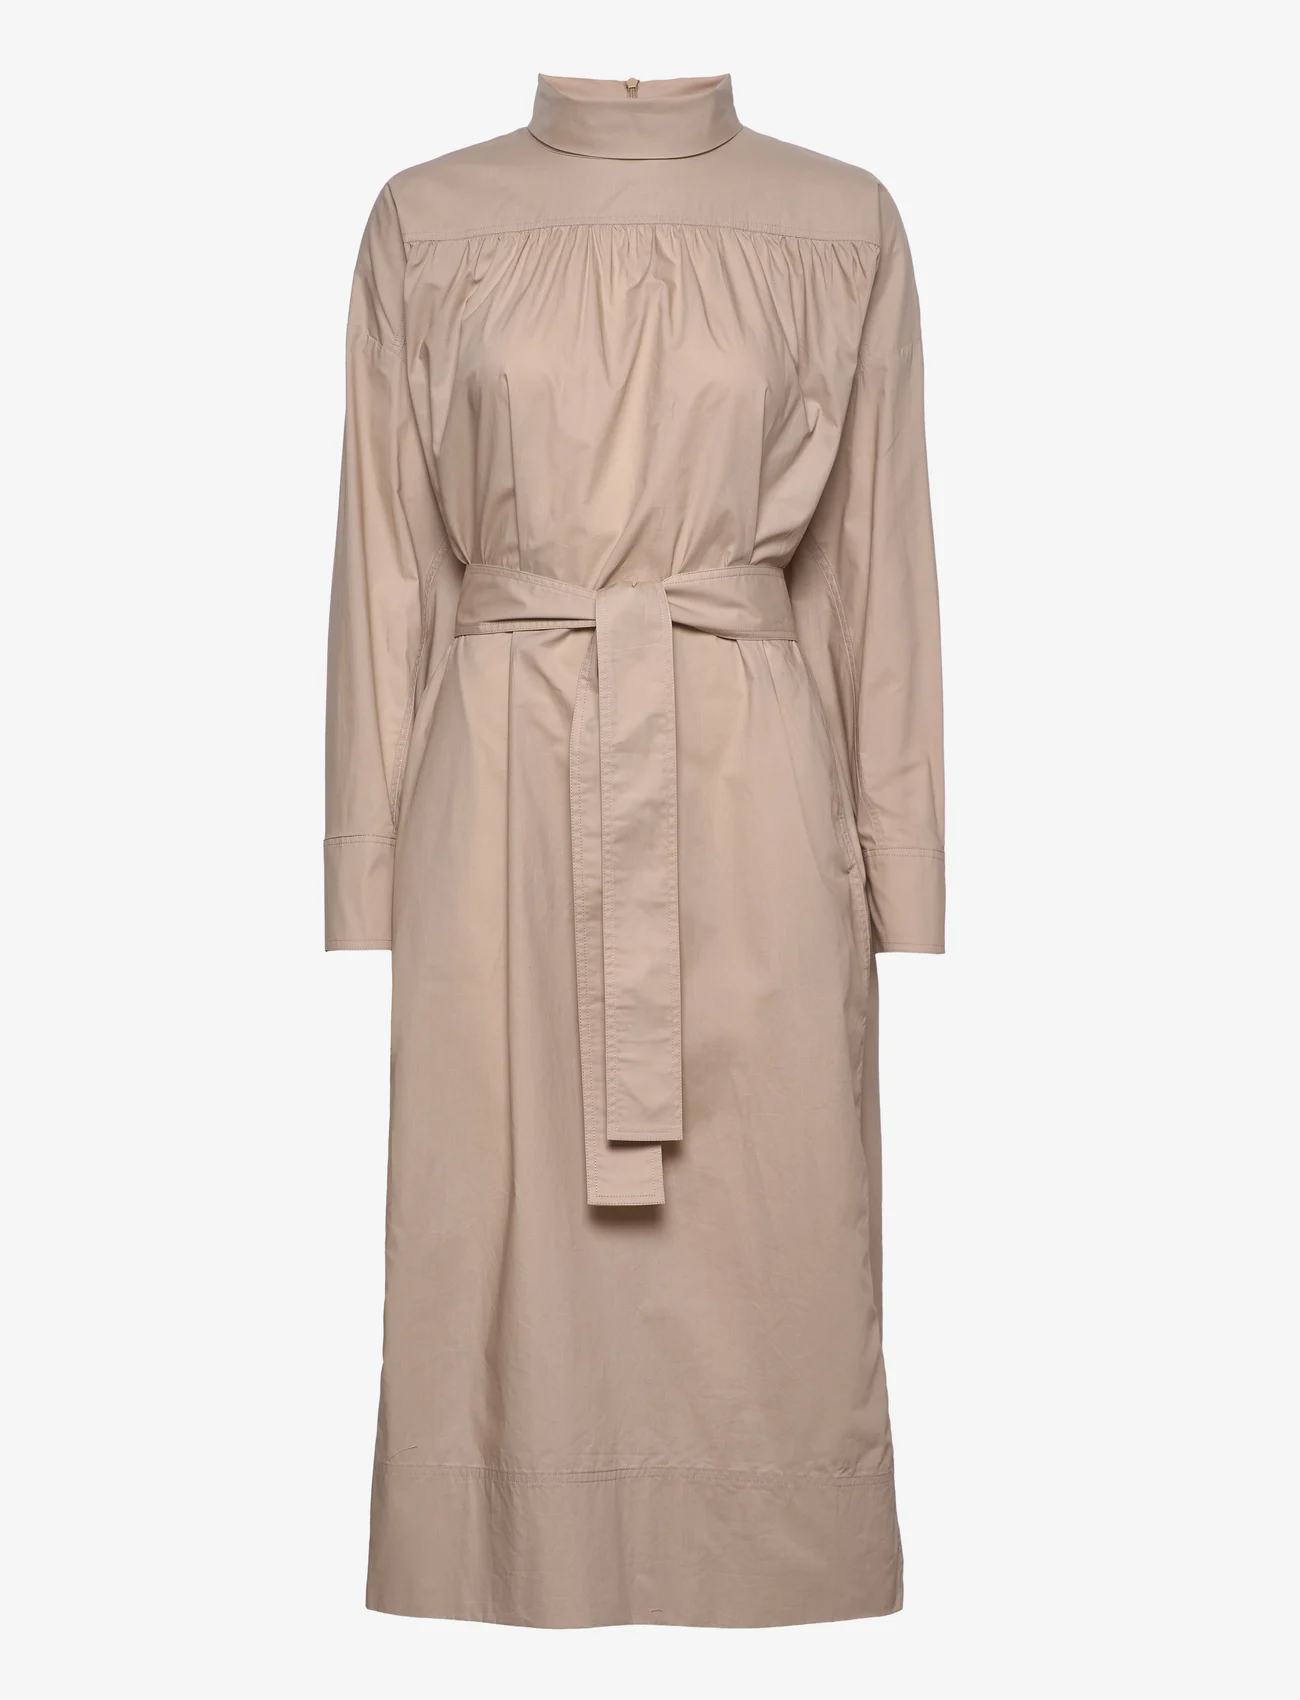 Lovechild 1979 - Celeste Dress - shirt dresses - oyster - 0